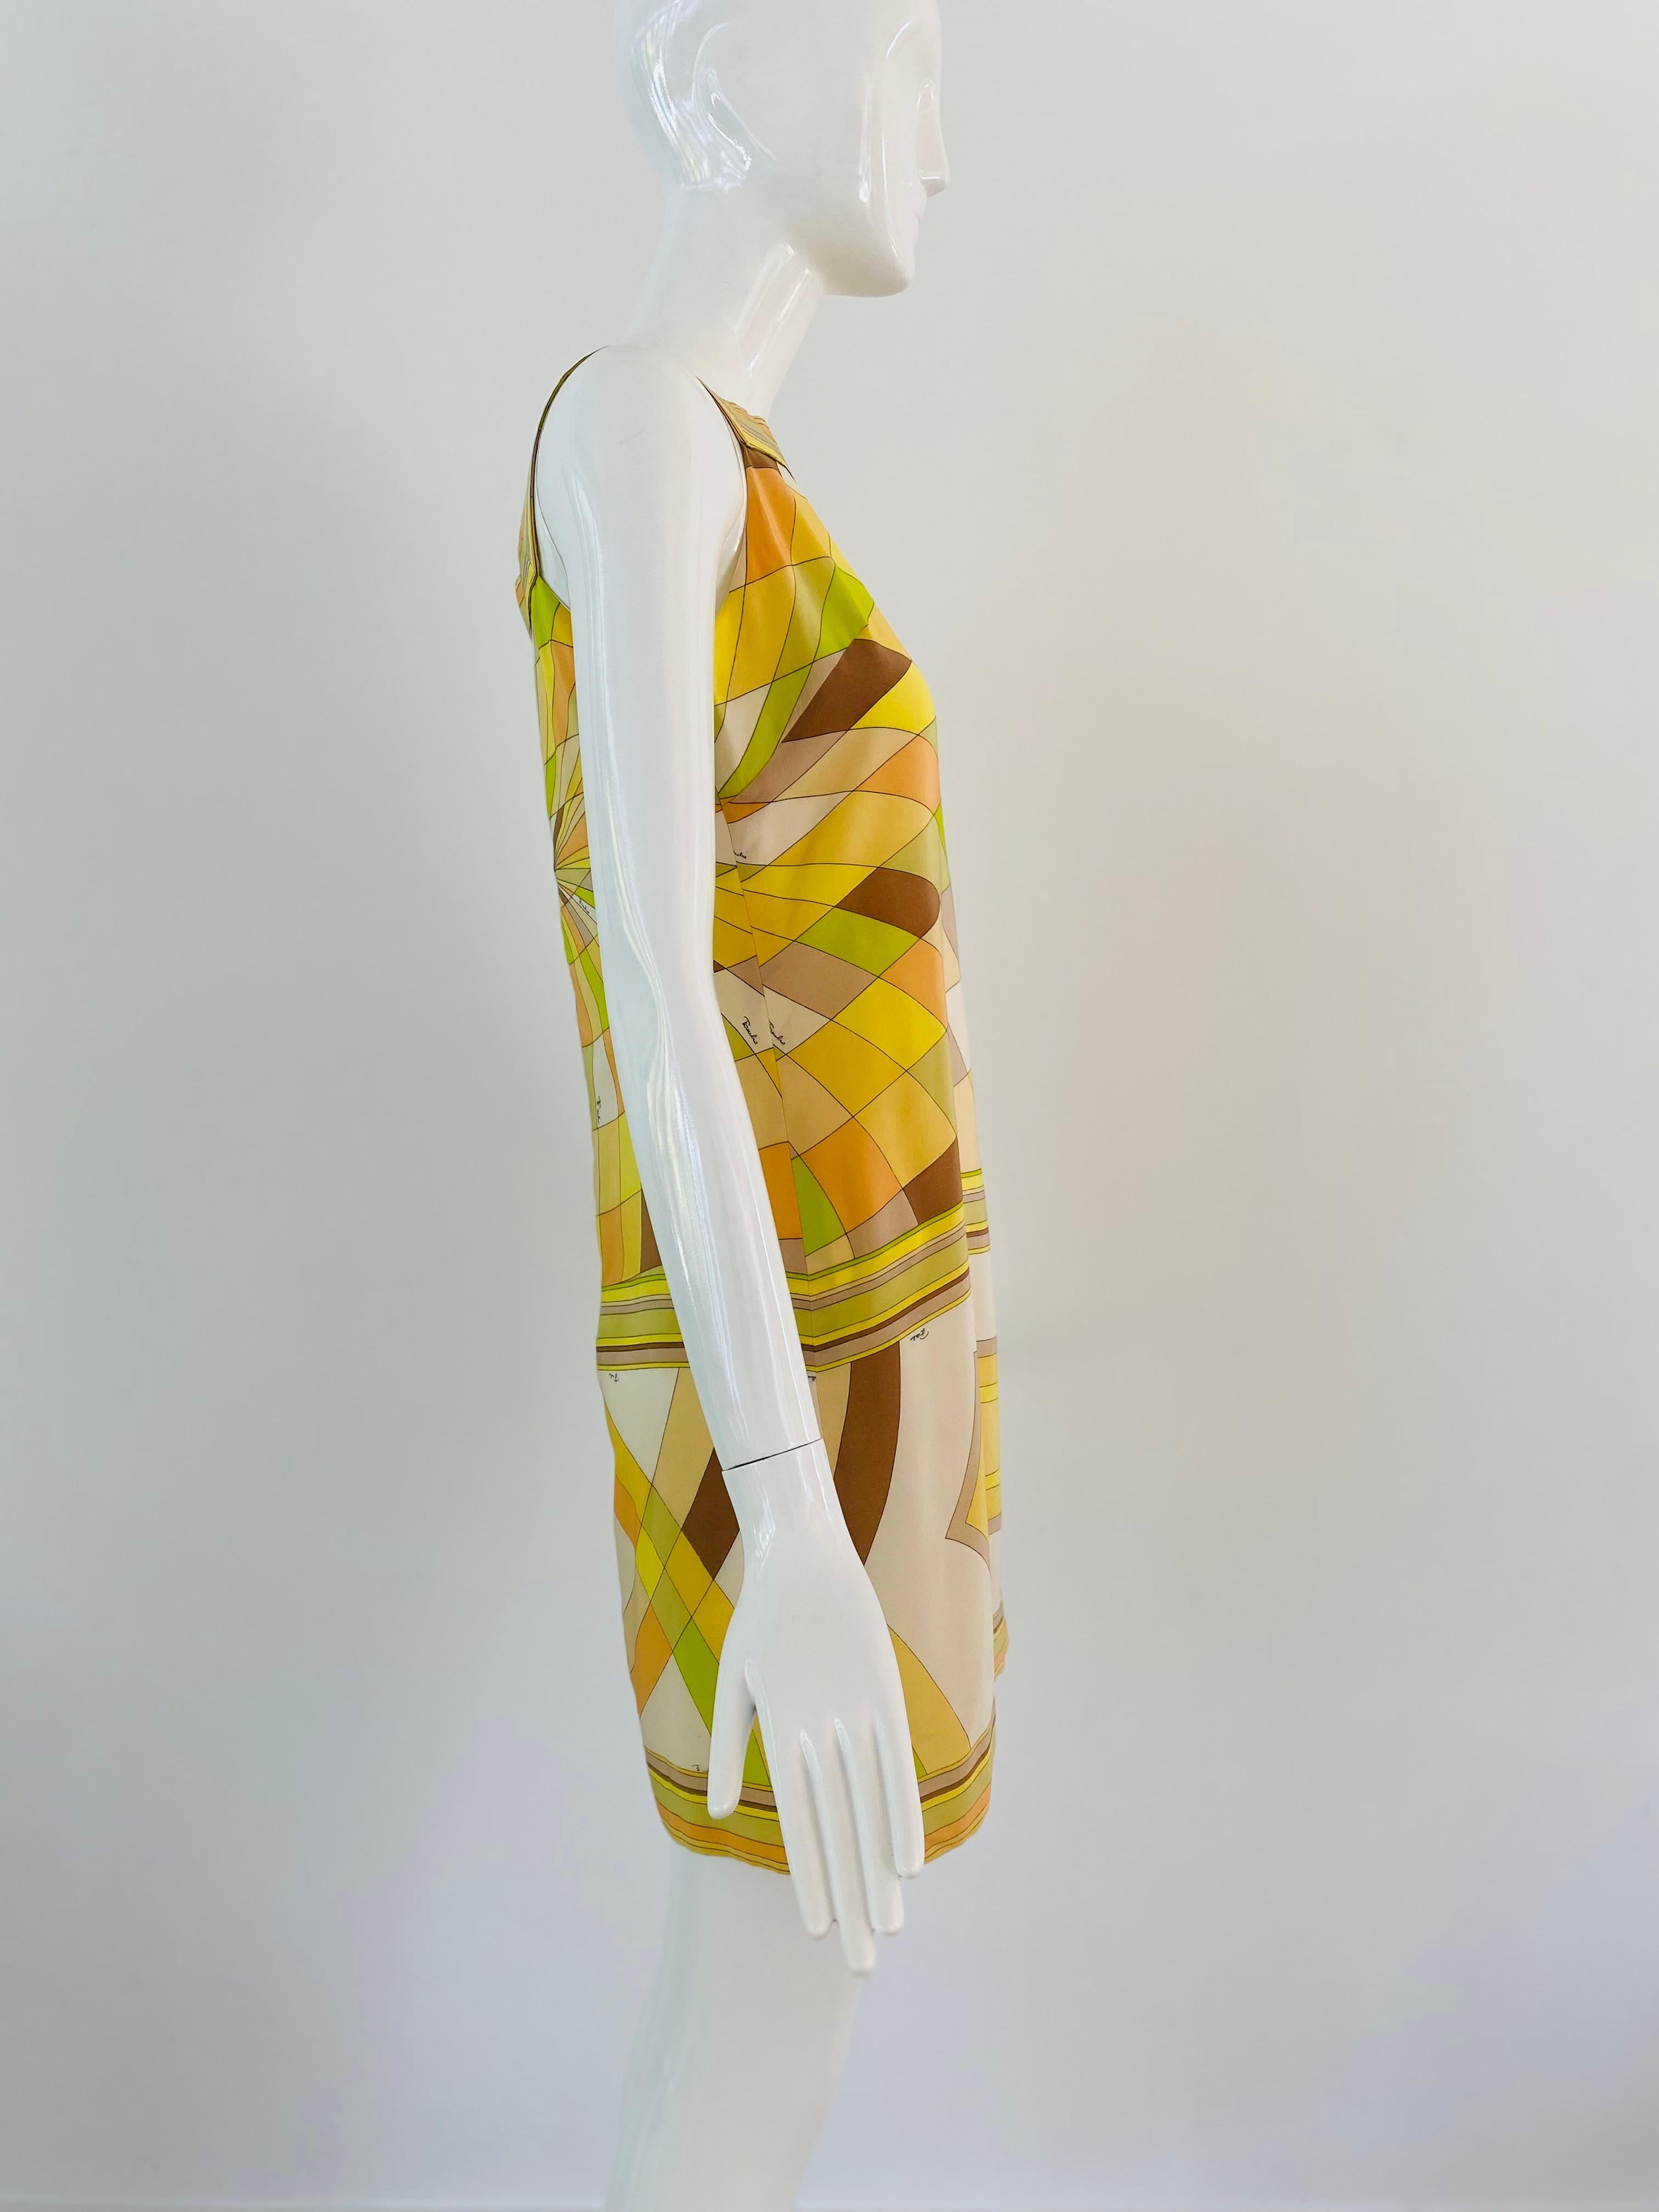 Tauchen Sie ein in die pulsierende Welt der 1960er Jahre mit diesem atemberaubenden  Kleid von Pucci. Dieses aus luxuriöser Seide gefertigte Minikleid zeigt die ikonischen Designelemente, für die Emilio Pucci in dieser Zeit bekannt war. Das Kleid